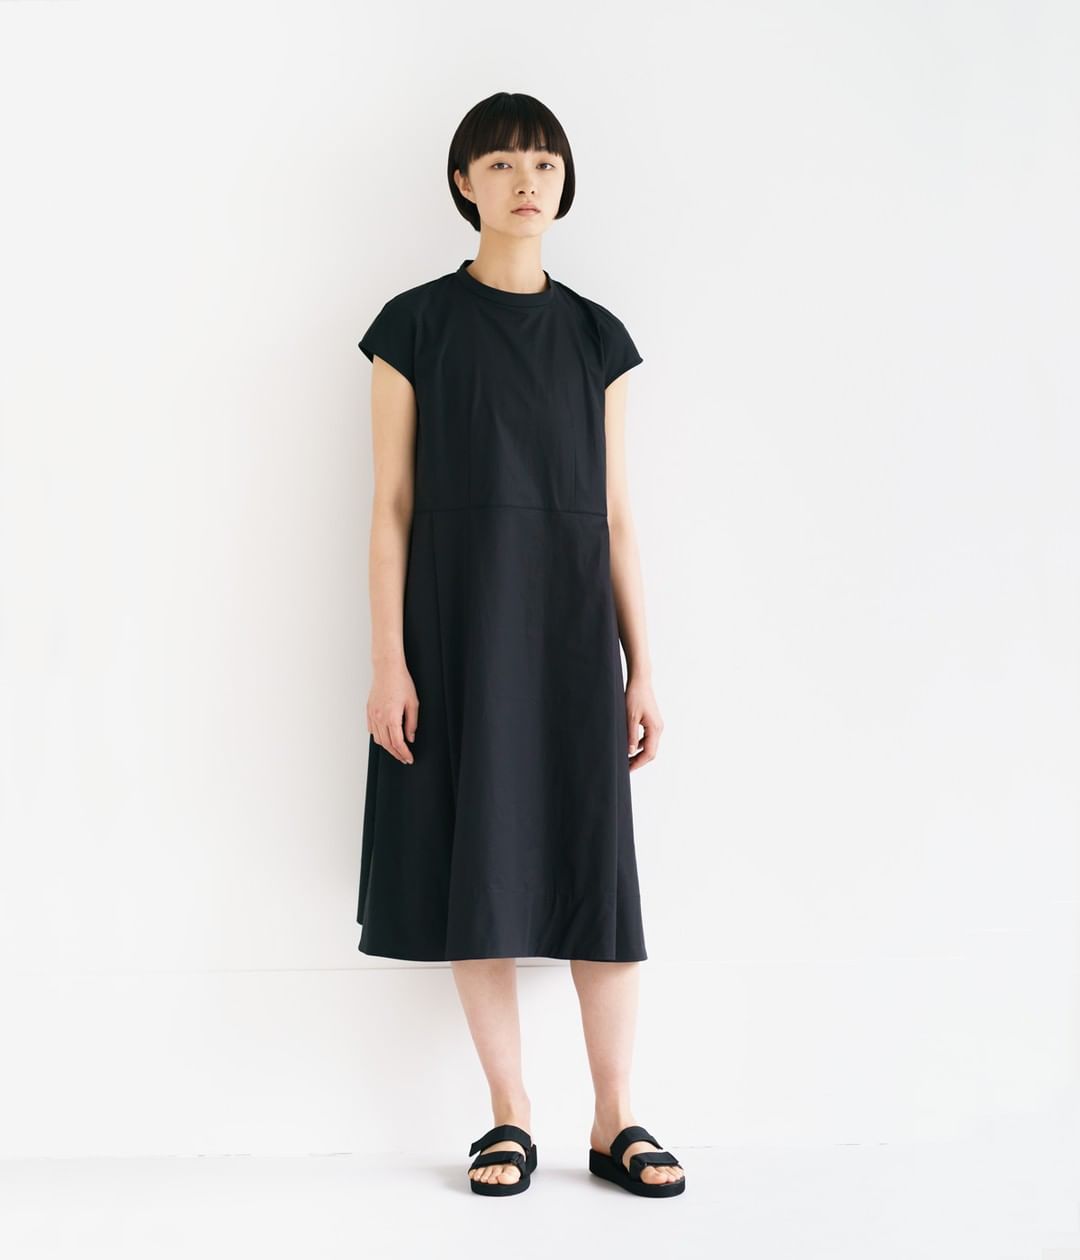 Muji無印良品 Muji Labo Women S Collection June Muji 無印良品 Mujilabo Dress ワンピース Sandals Ciao Nihon